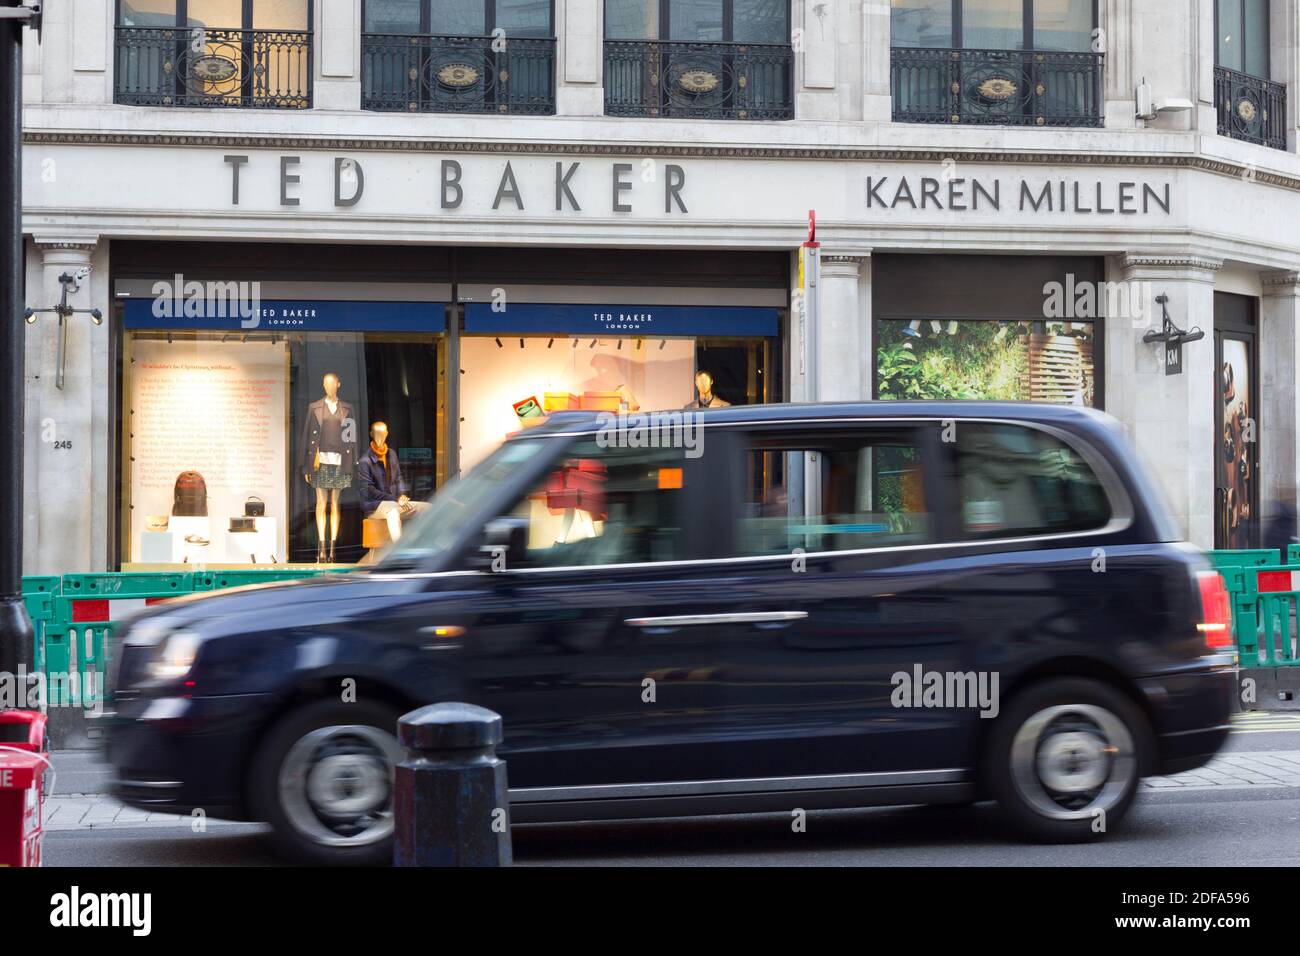 Taxi in taxi nero di Londra, passando accanto ai negozi TED BAKER e KAREN MILLEN su Regent Street, Londra, Inghilterra Foto Stock